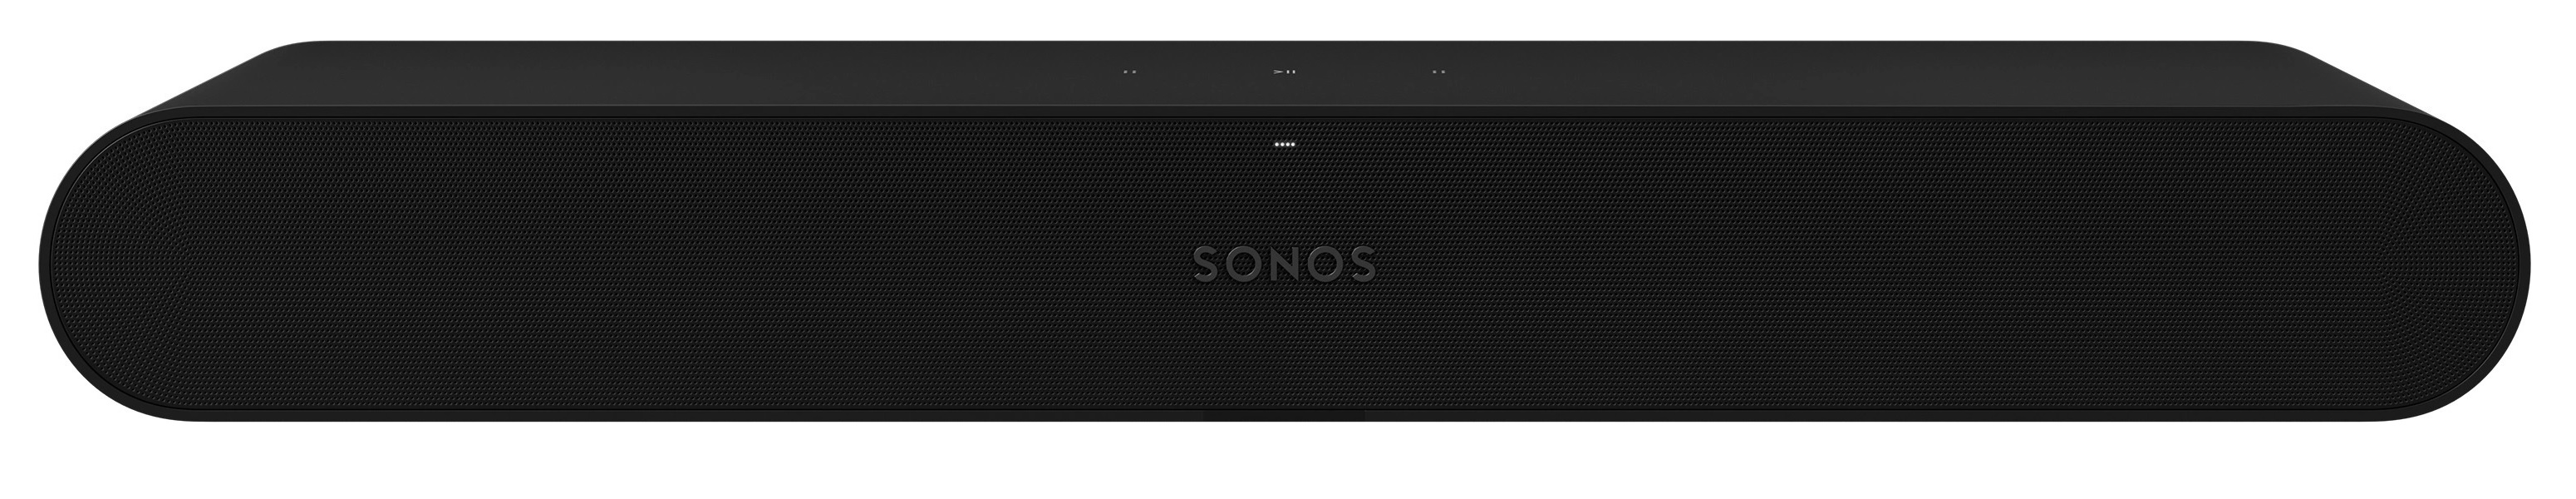 Mexico Vooruitzicht native De Sonos Ray is de goedkoopste soundbar van Sonos